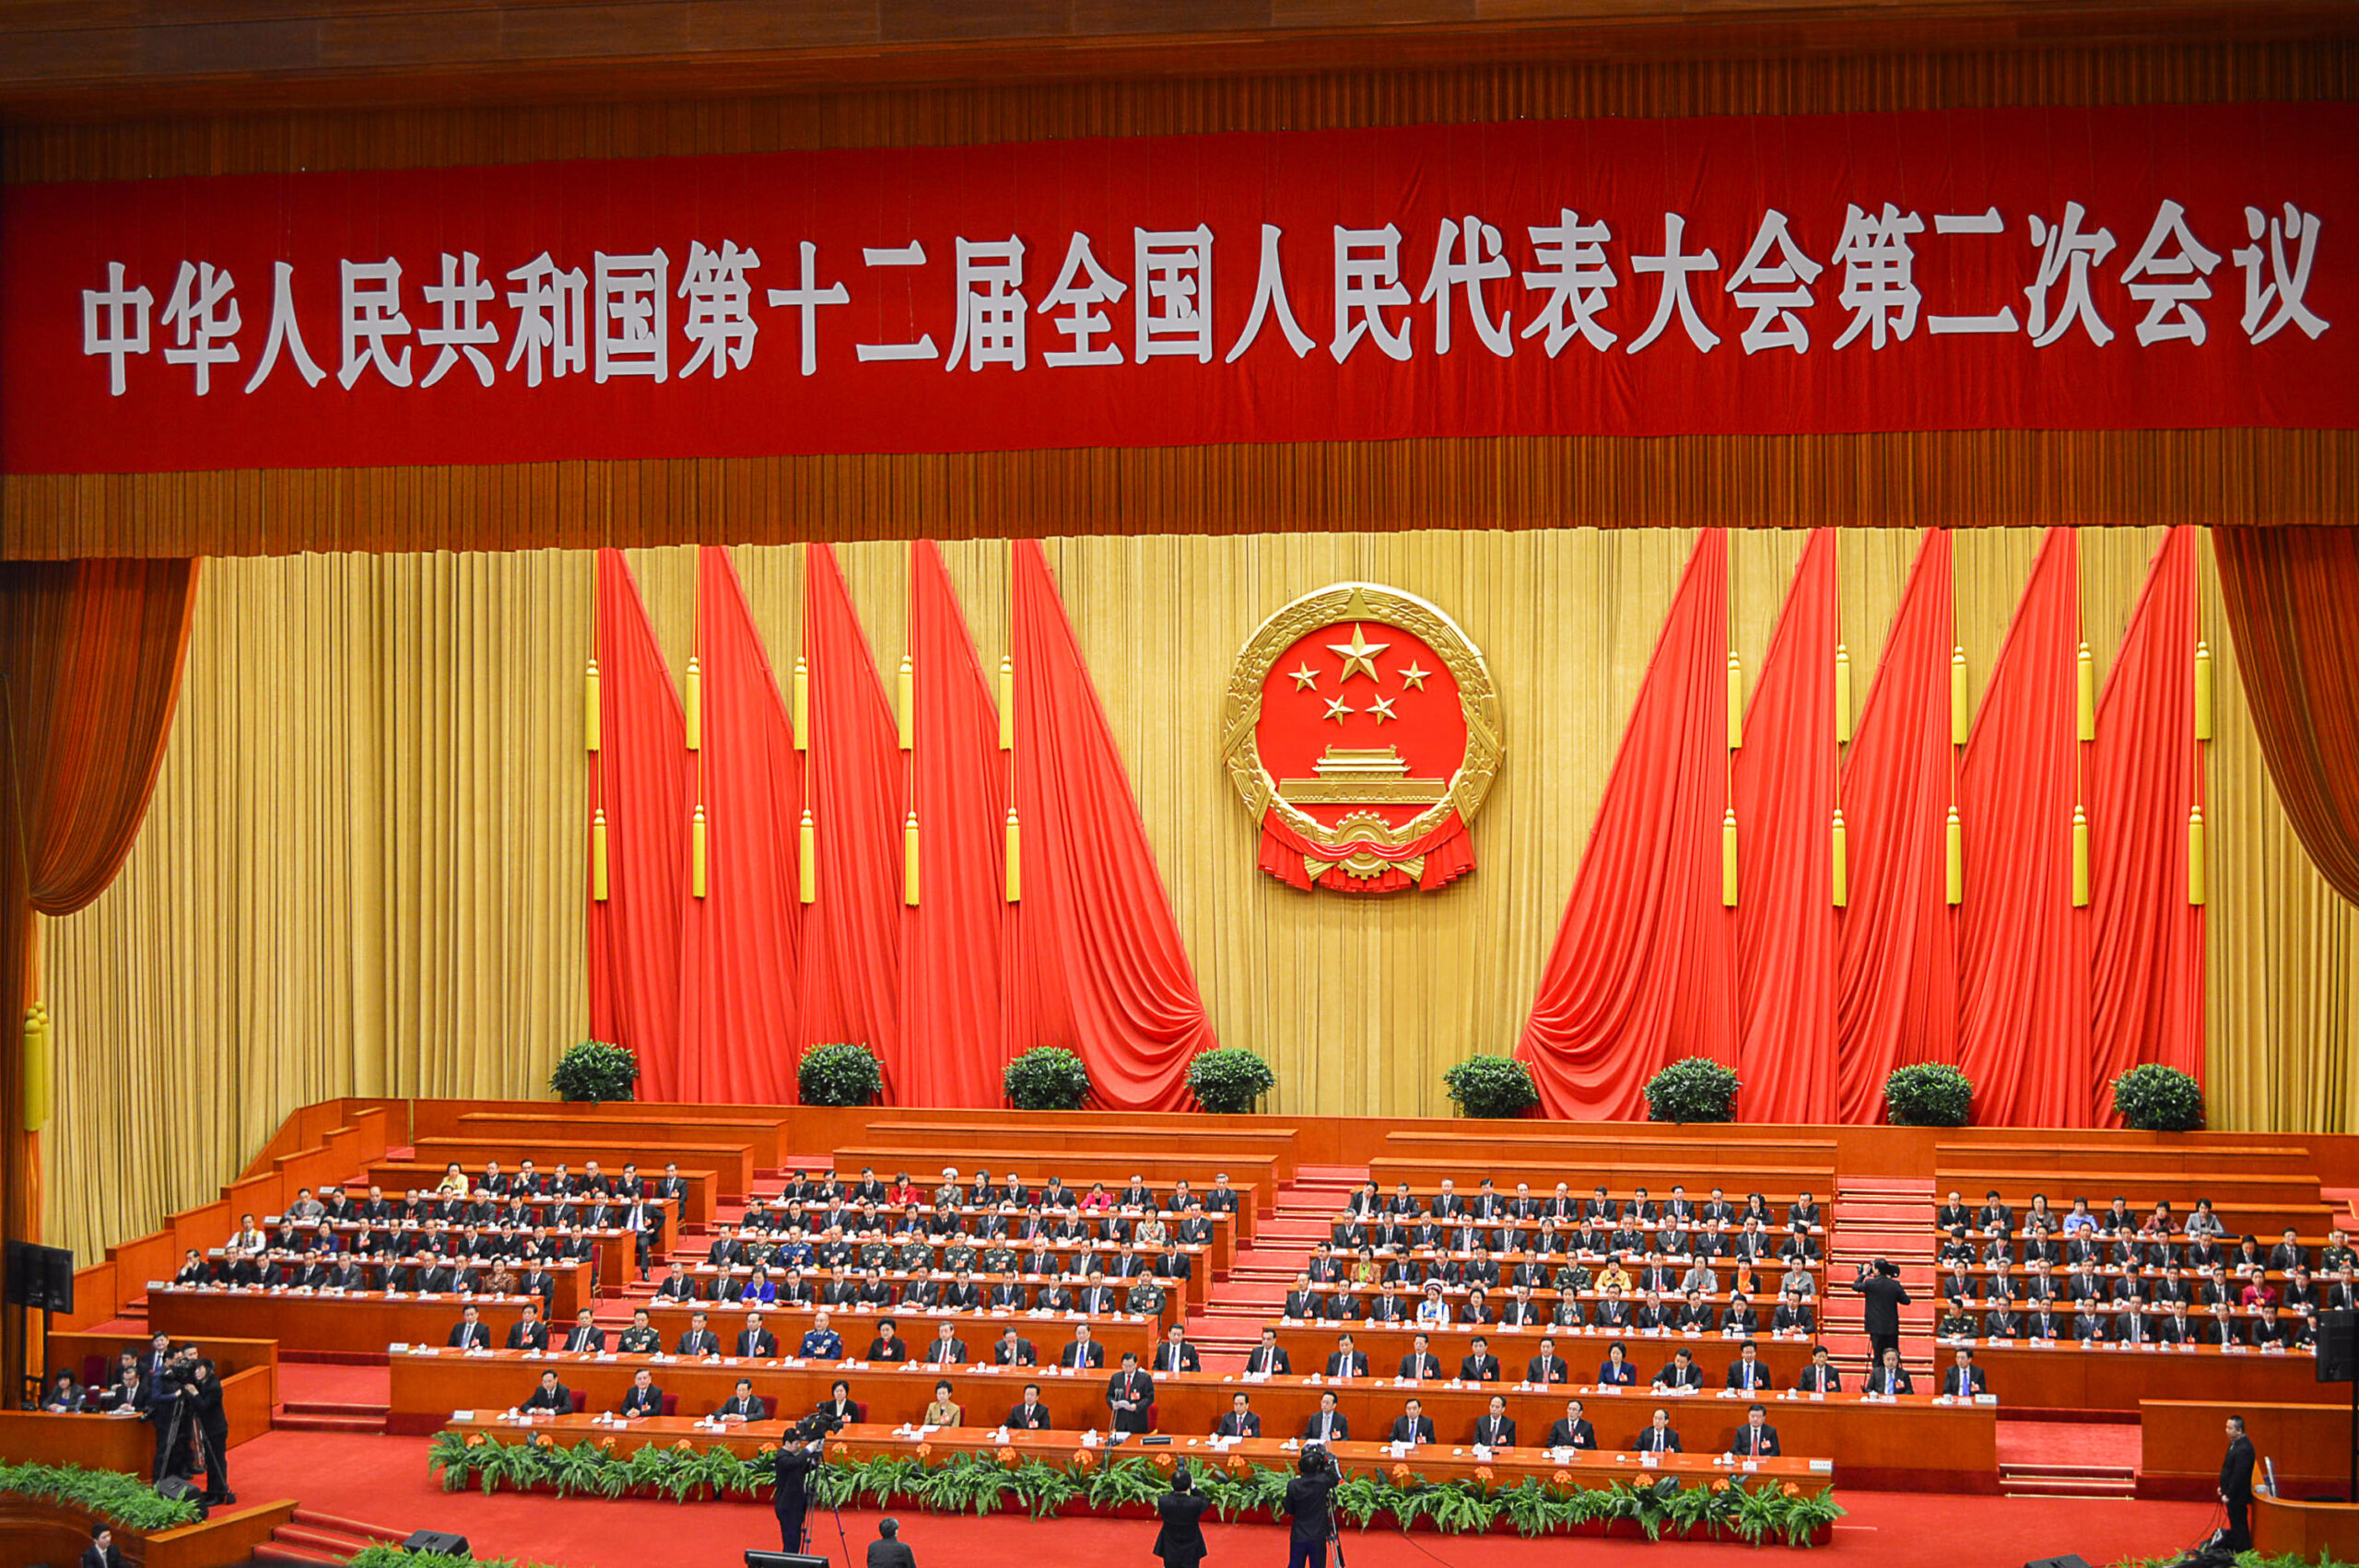 Mit 96 verstorben – Jiang Zemin und der Machtaufstieg Chinas